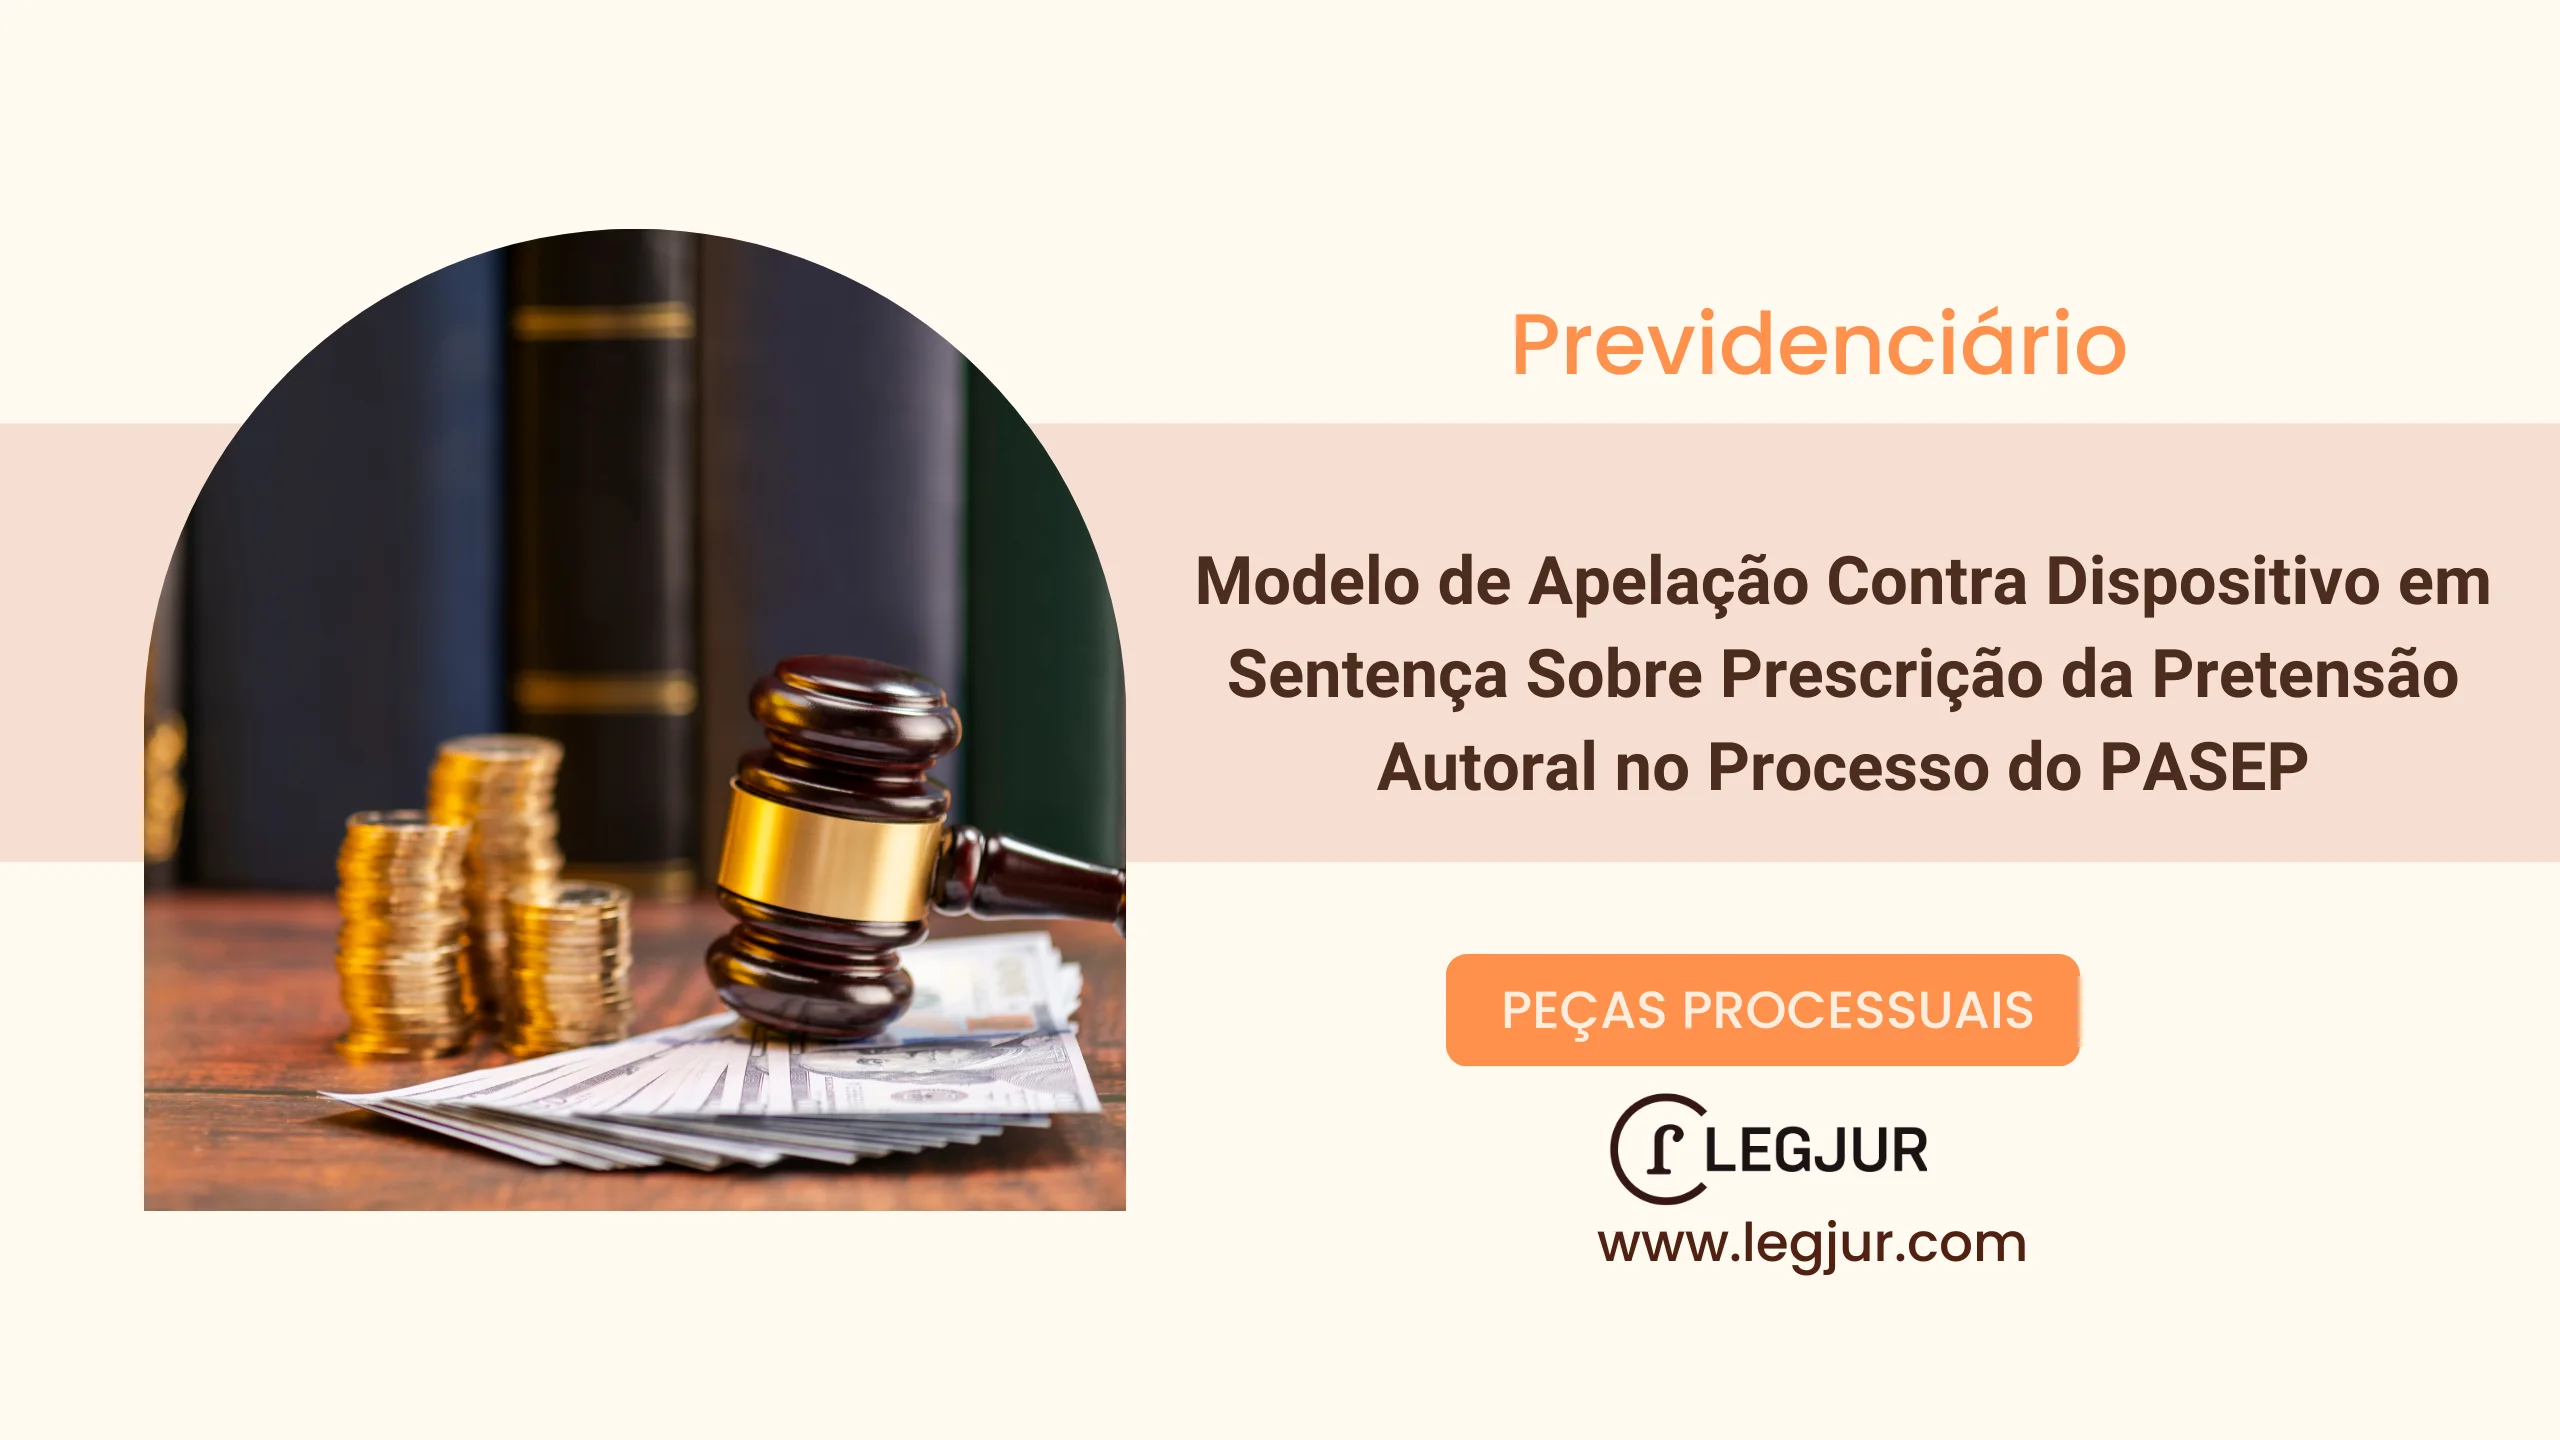 Modelo de Apelação Contra Dispositivo em Sentença Sobre Prescrição da Pretensão Autoral no Processo do PASEP